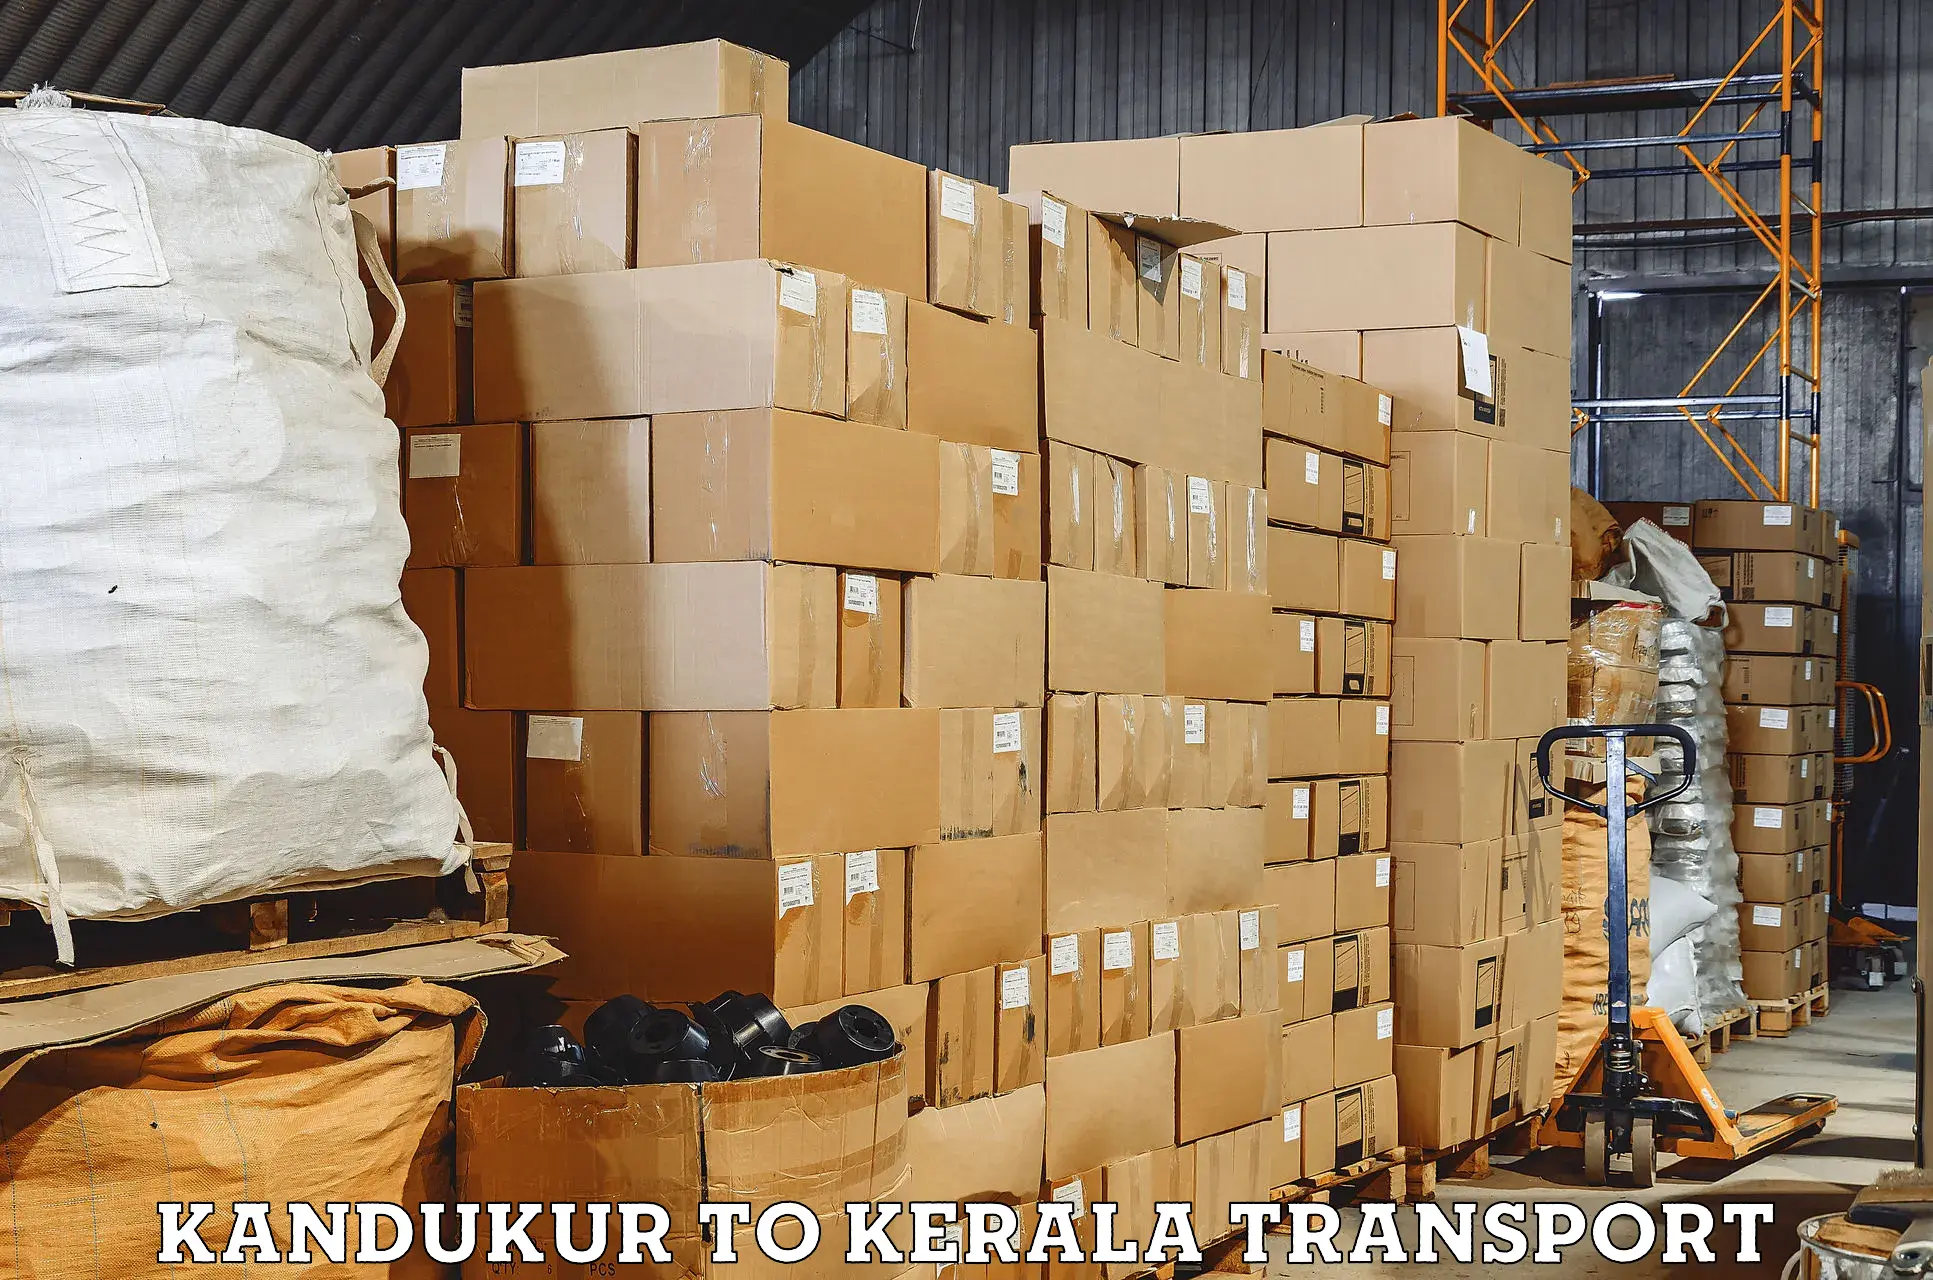 Transport in sharing Kandukur to Puthukkad